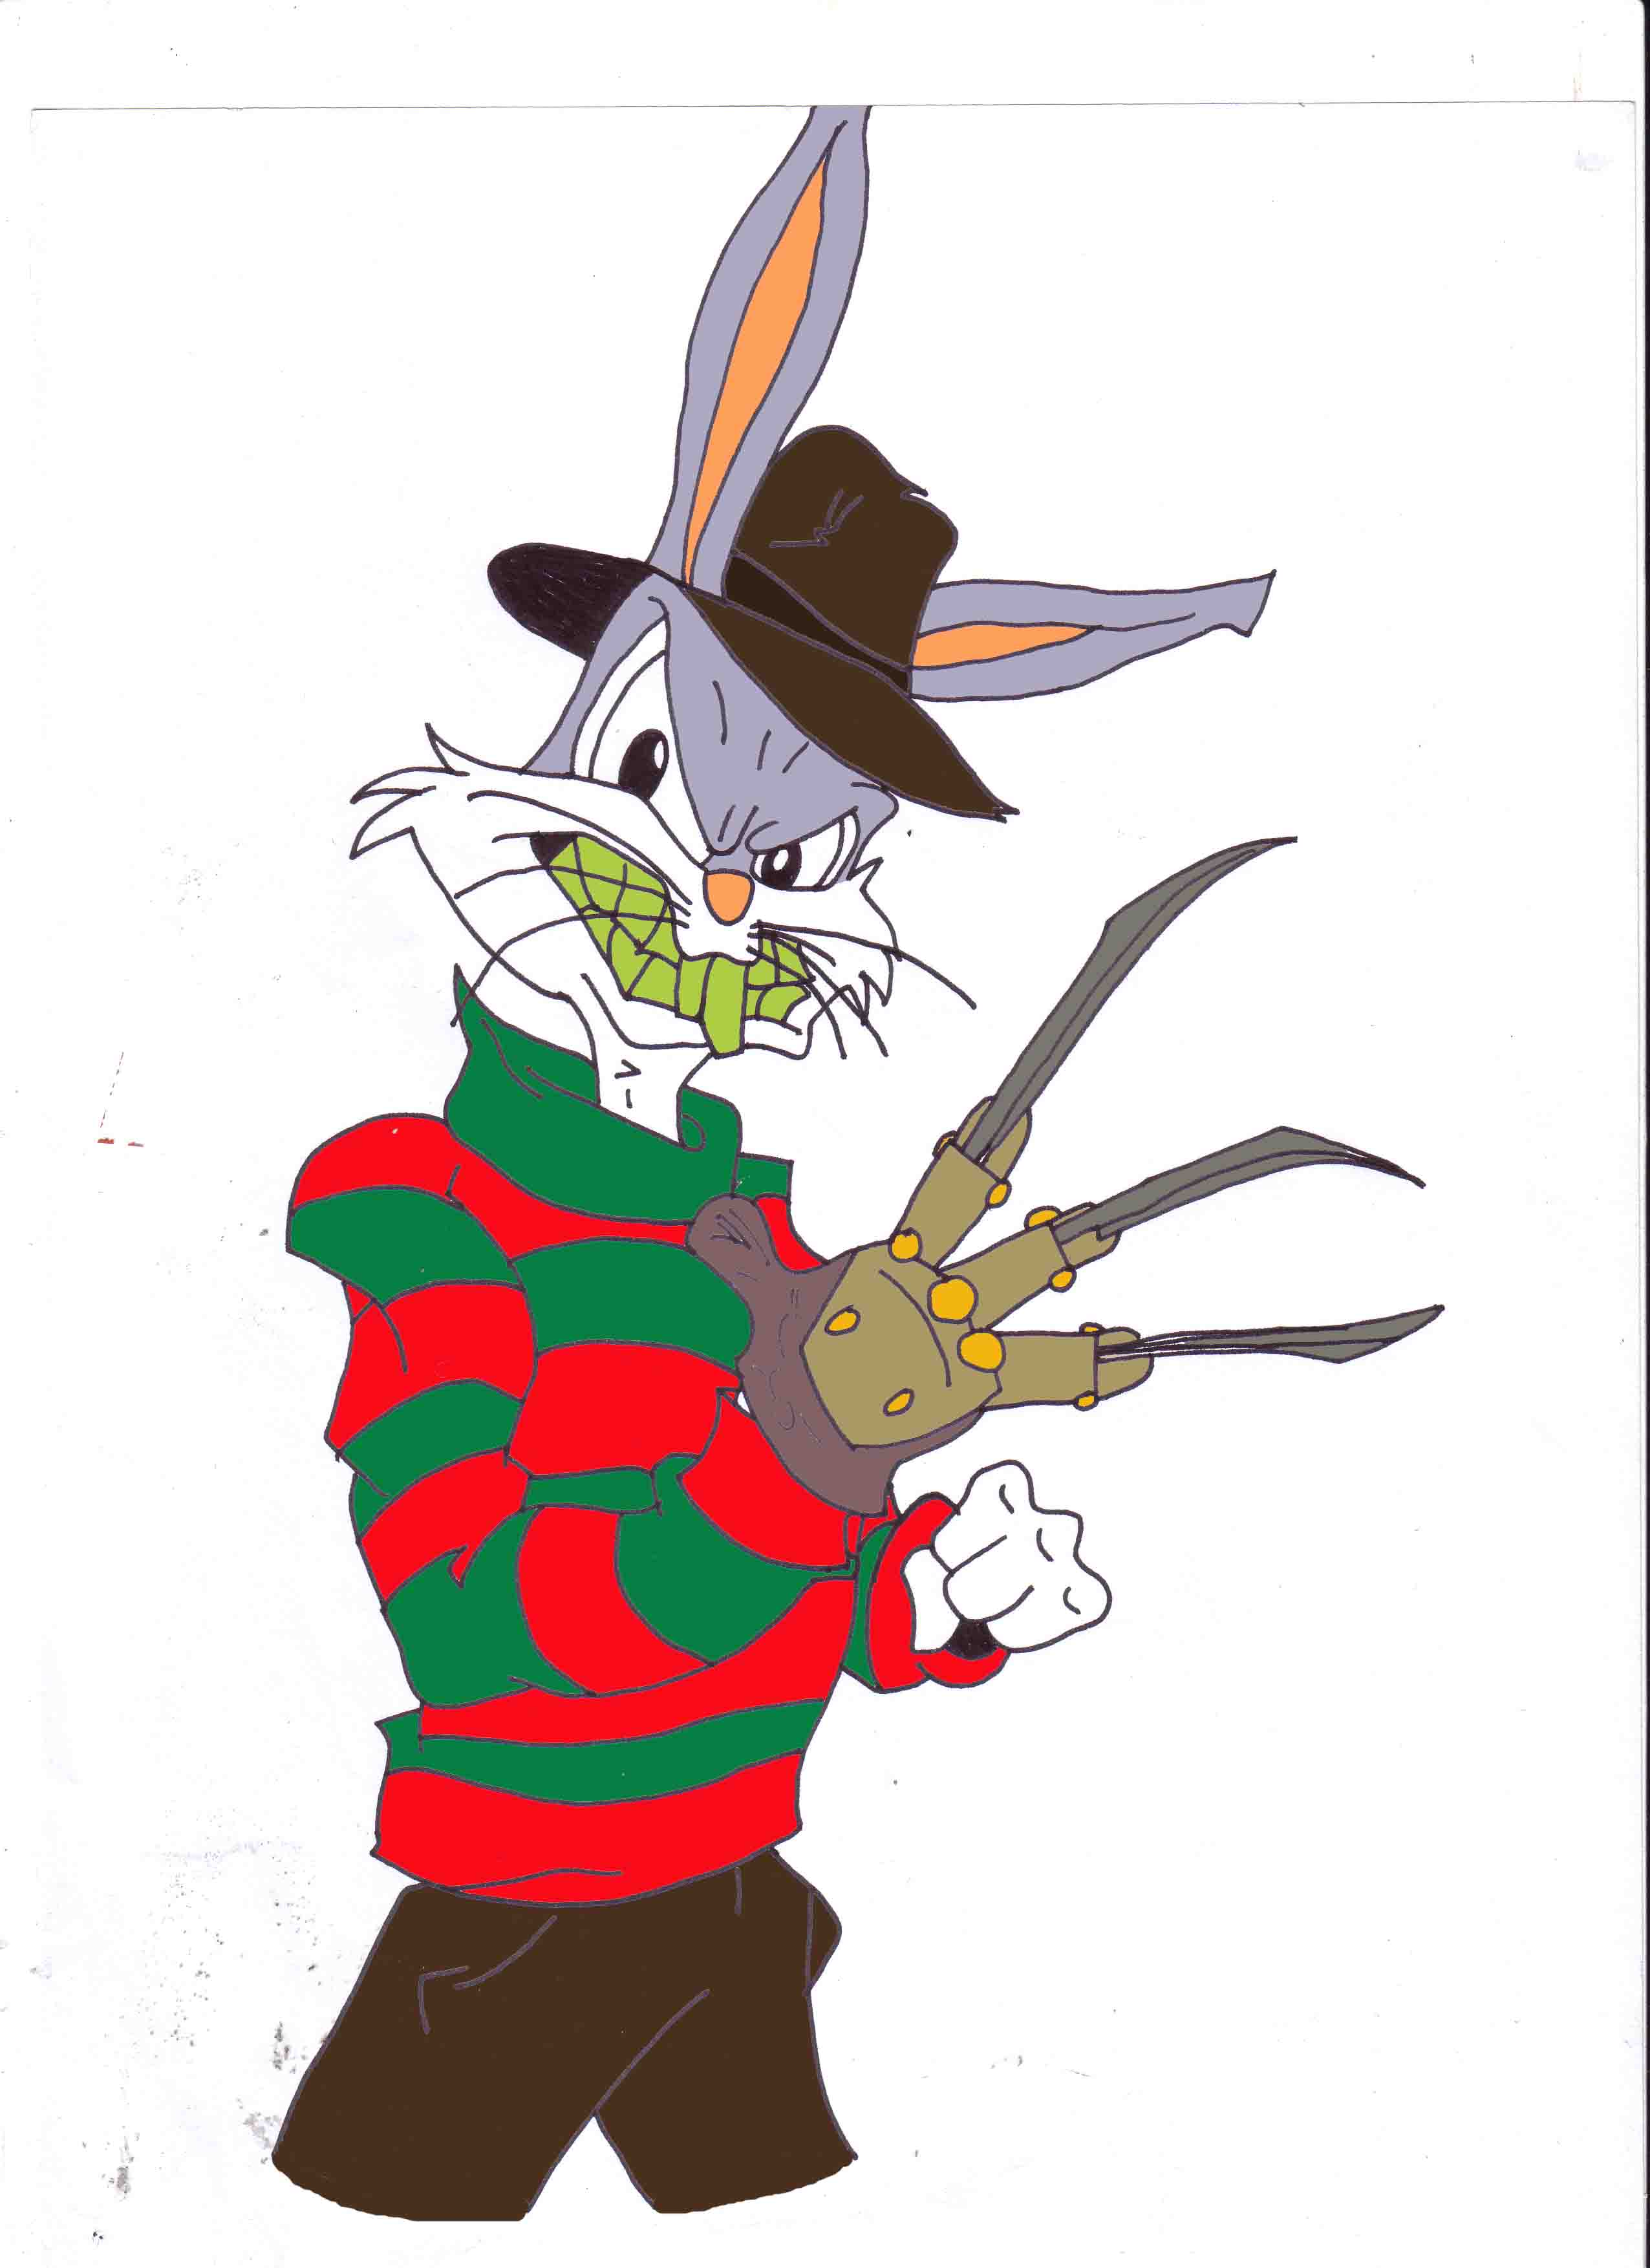 Bugs bunny IS freddy krueger by DJande